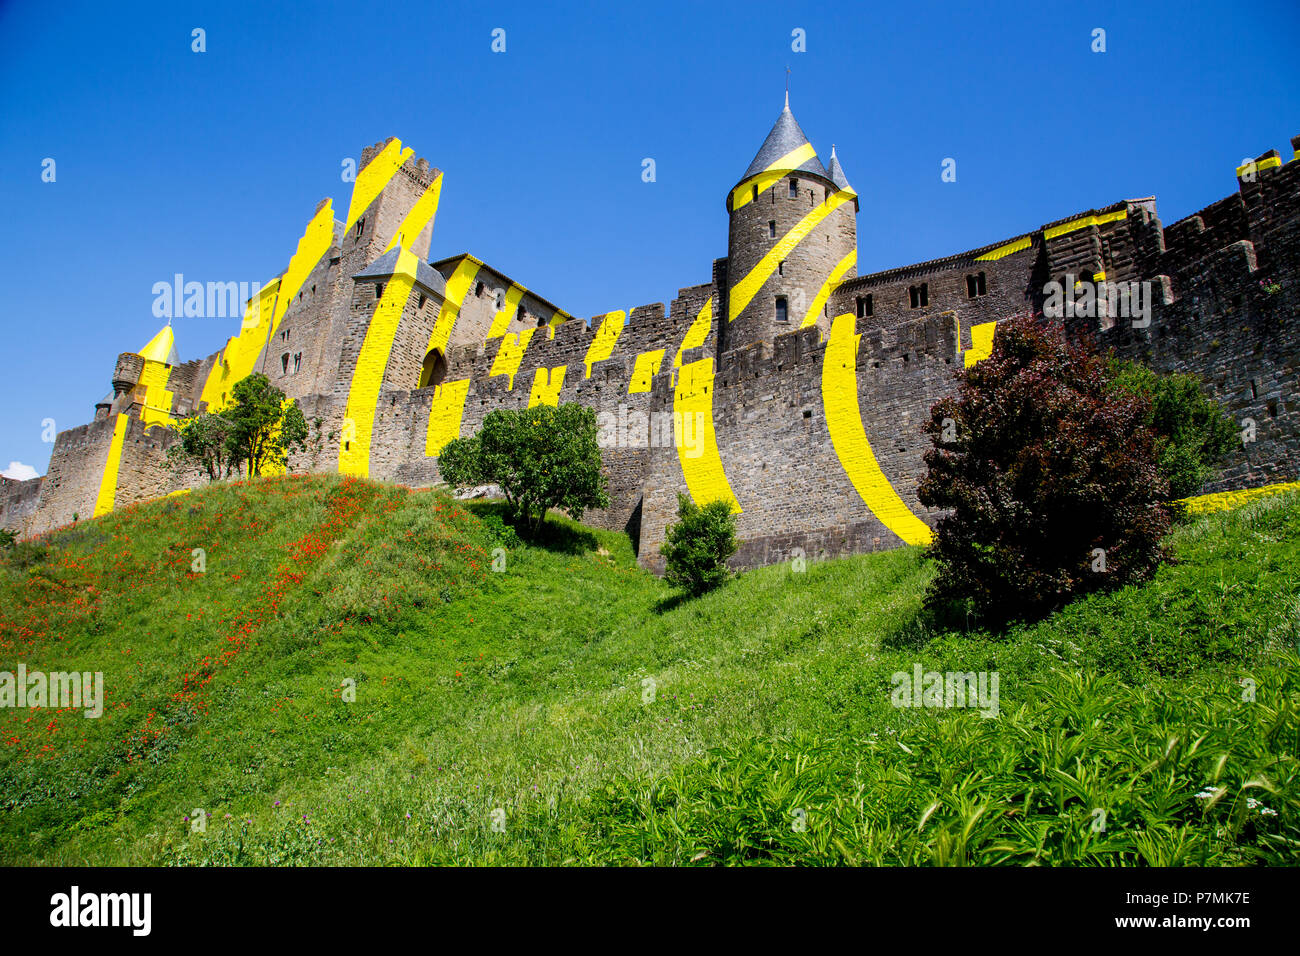 Die von Mauern umgebene Stadt Carcassonne in Frankreich. Die konzentrischen Kreise wurden vor kurzem von der Künstlerin Felice Varini hinzugefügt. Stockfoto